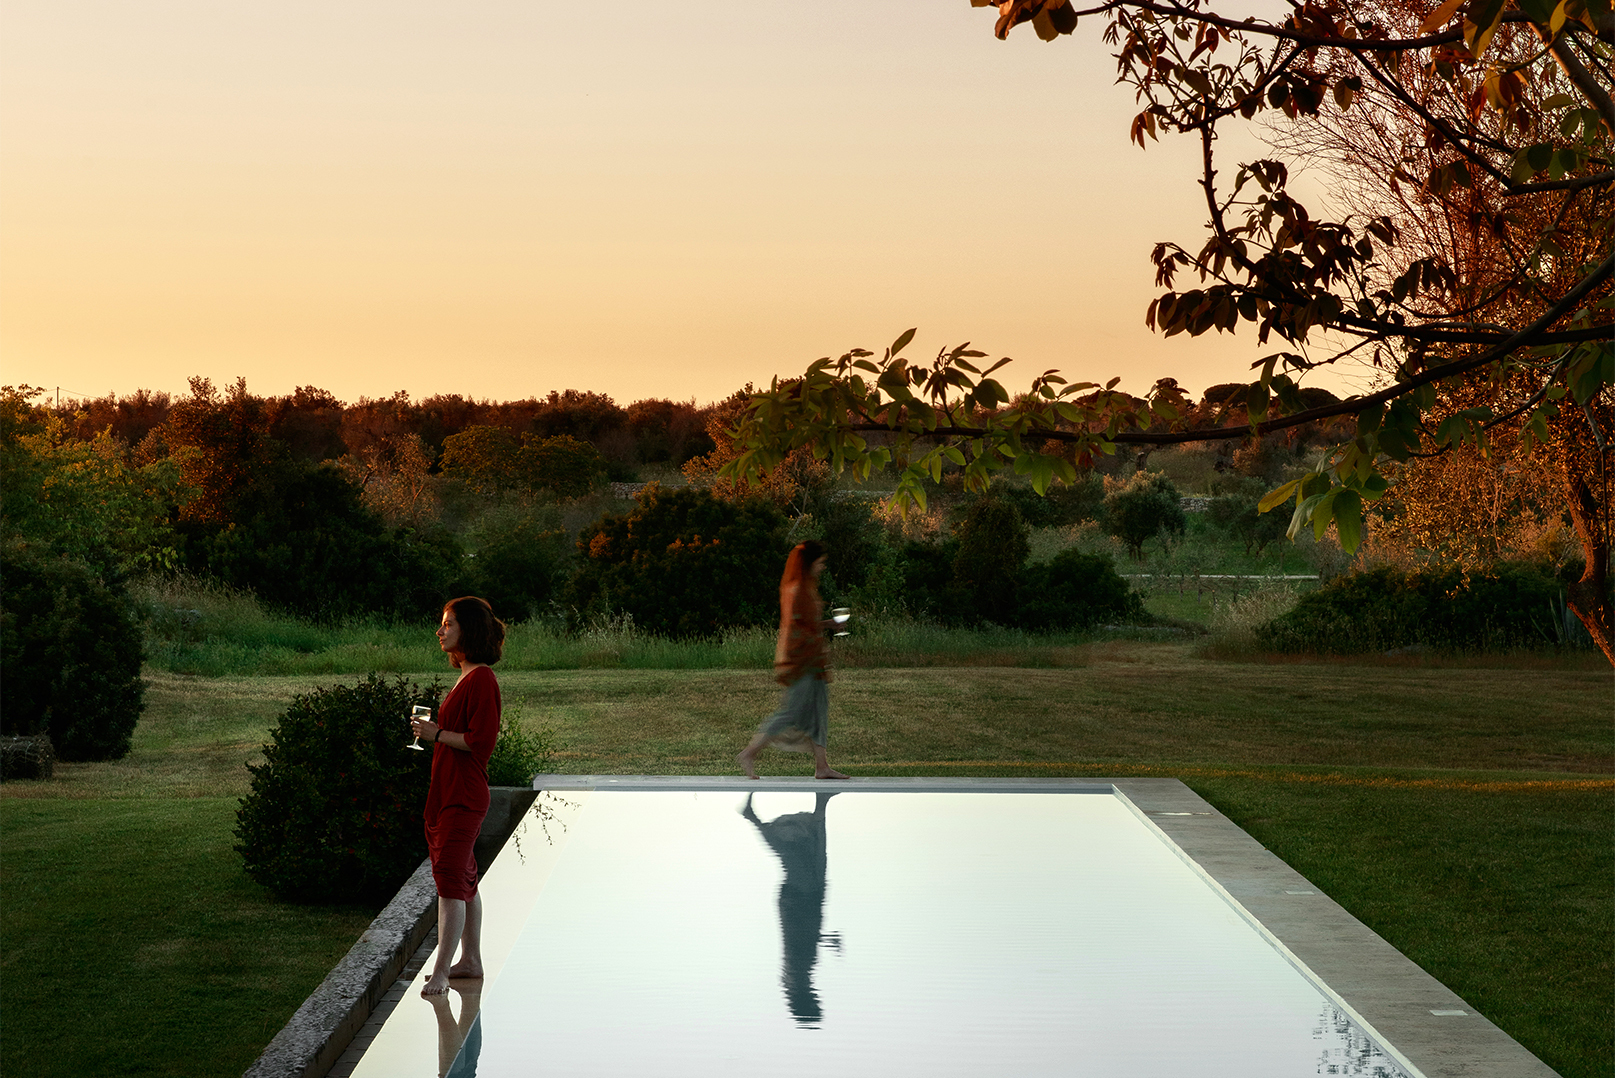 deux-femmes-un-verre-de-vin-a-lmain-debout-autour-d-une-piscine-exterieure-au-milieu-d-un-champ-verdoyant